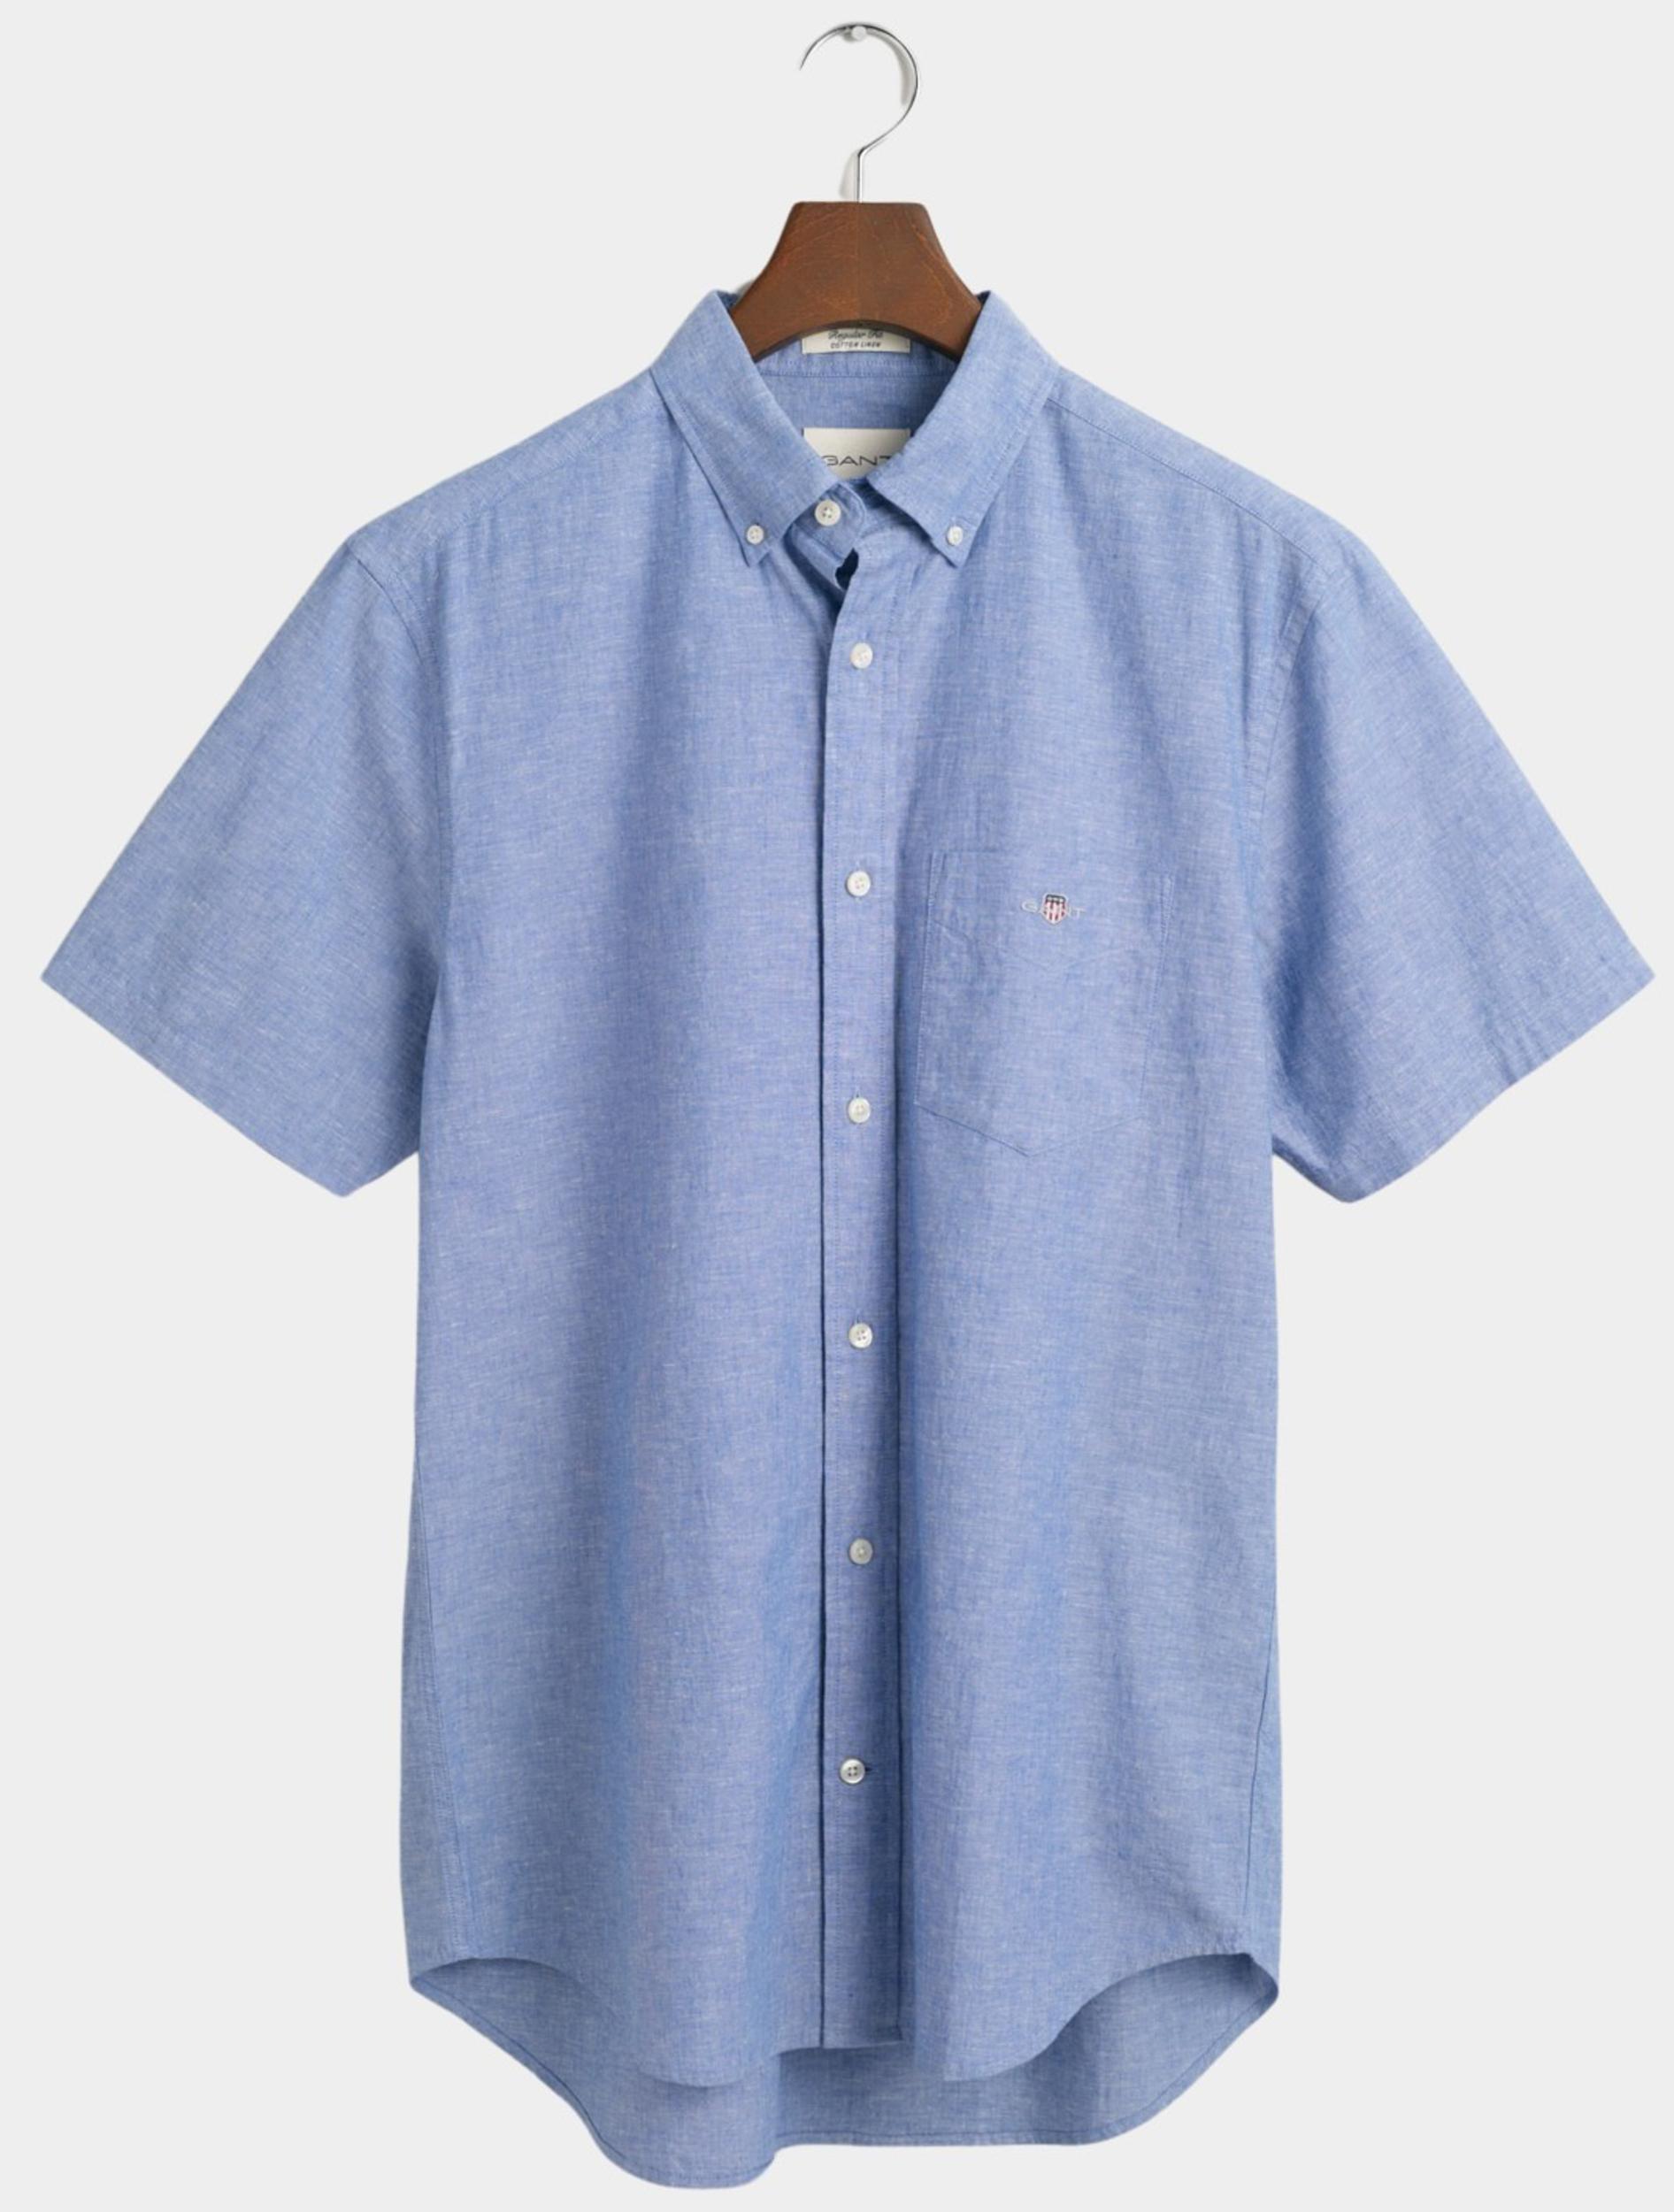 Gant Casual hemd korte mouw Blauw Cotton Linen SS Shirt 3240101/407